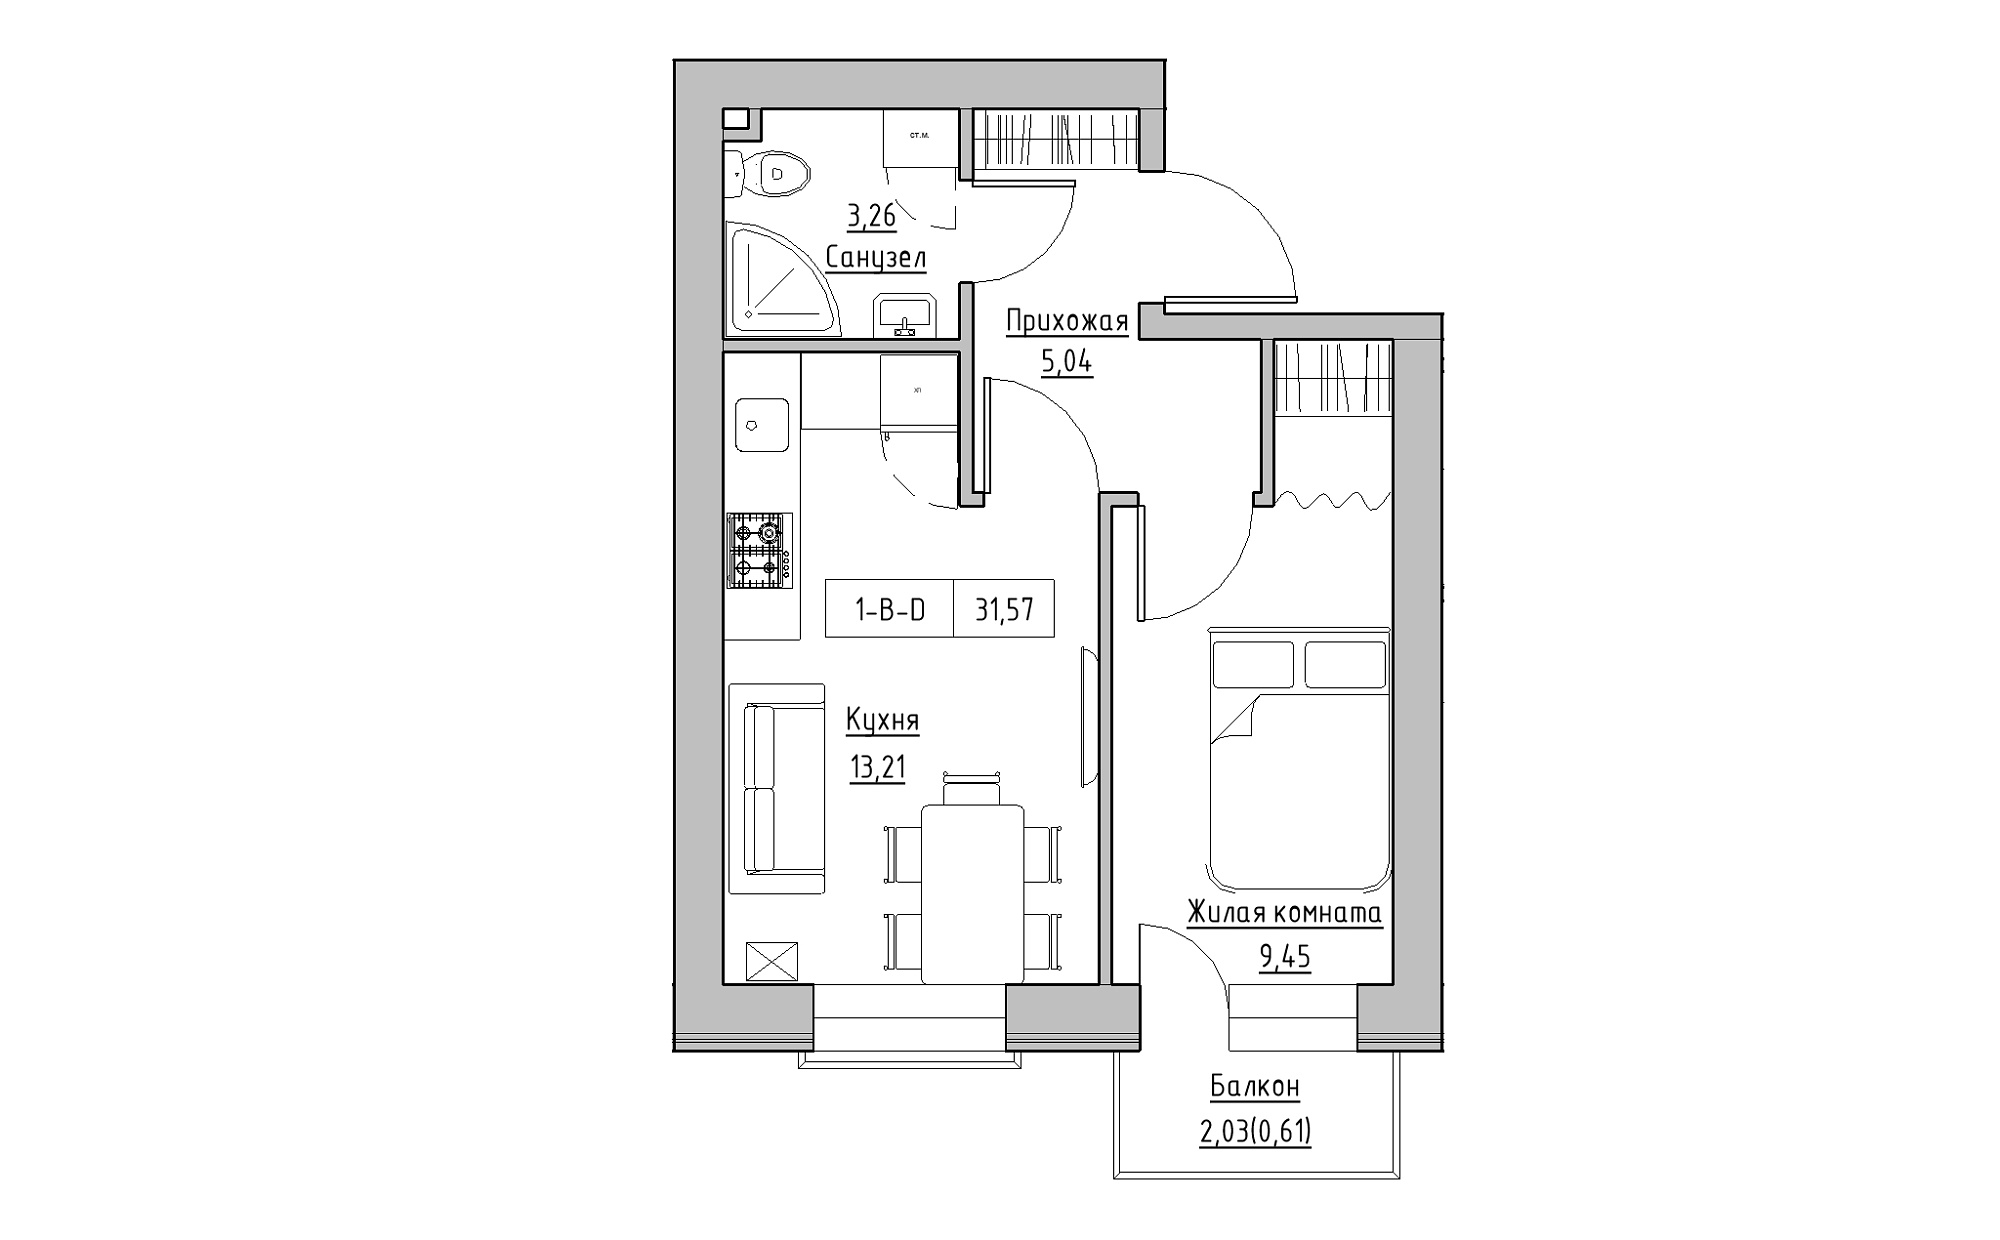 Планування 1-к квартира площею 31.57м2, KS-022-05/0003.